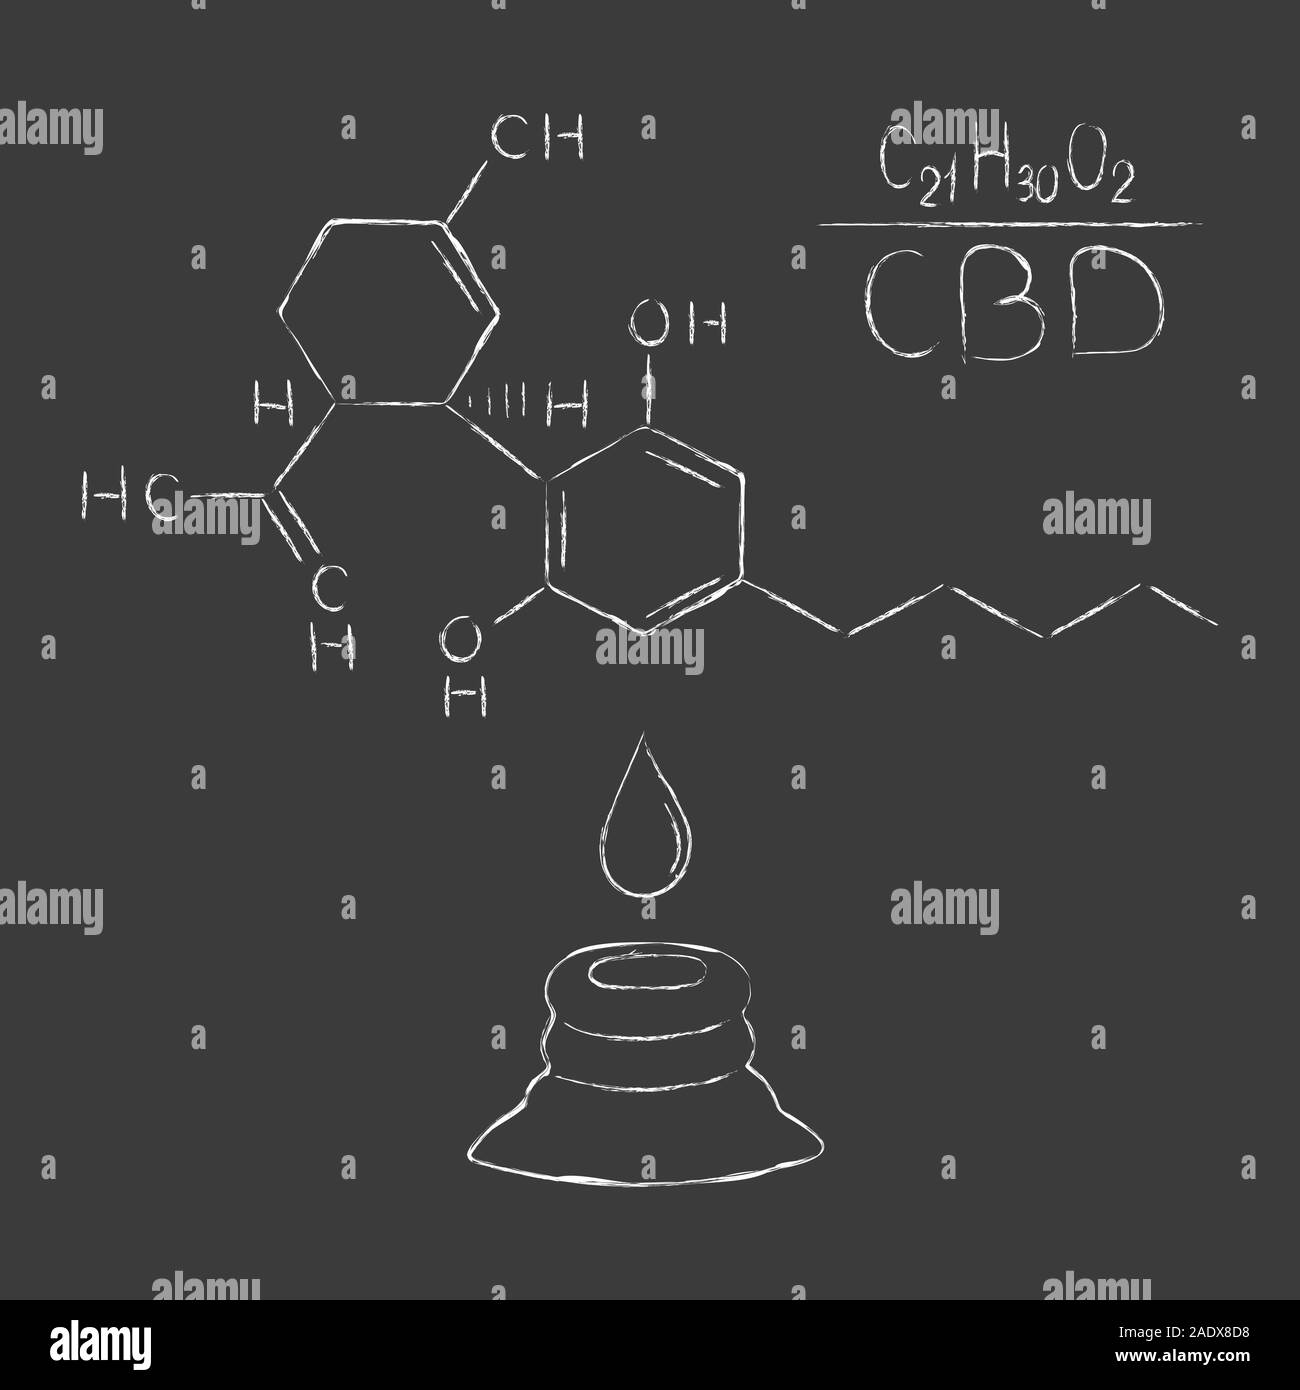 Die Formel von Hanf CBD. Strukturmodell der Moleküle Cannabidiol und Tetrahydrocannabinol. Medizinisches Cannabis. Medizinisches Marihuana, Vektor Stock Vektor